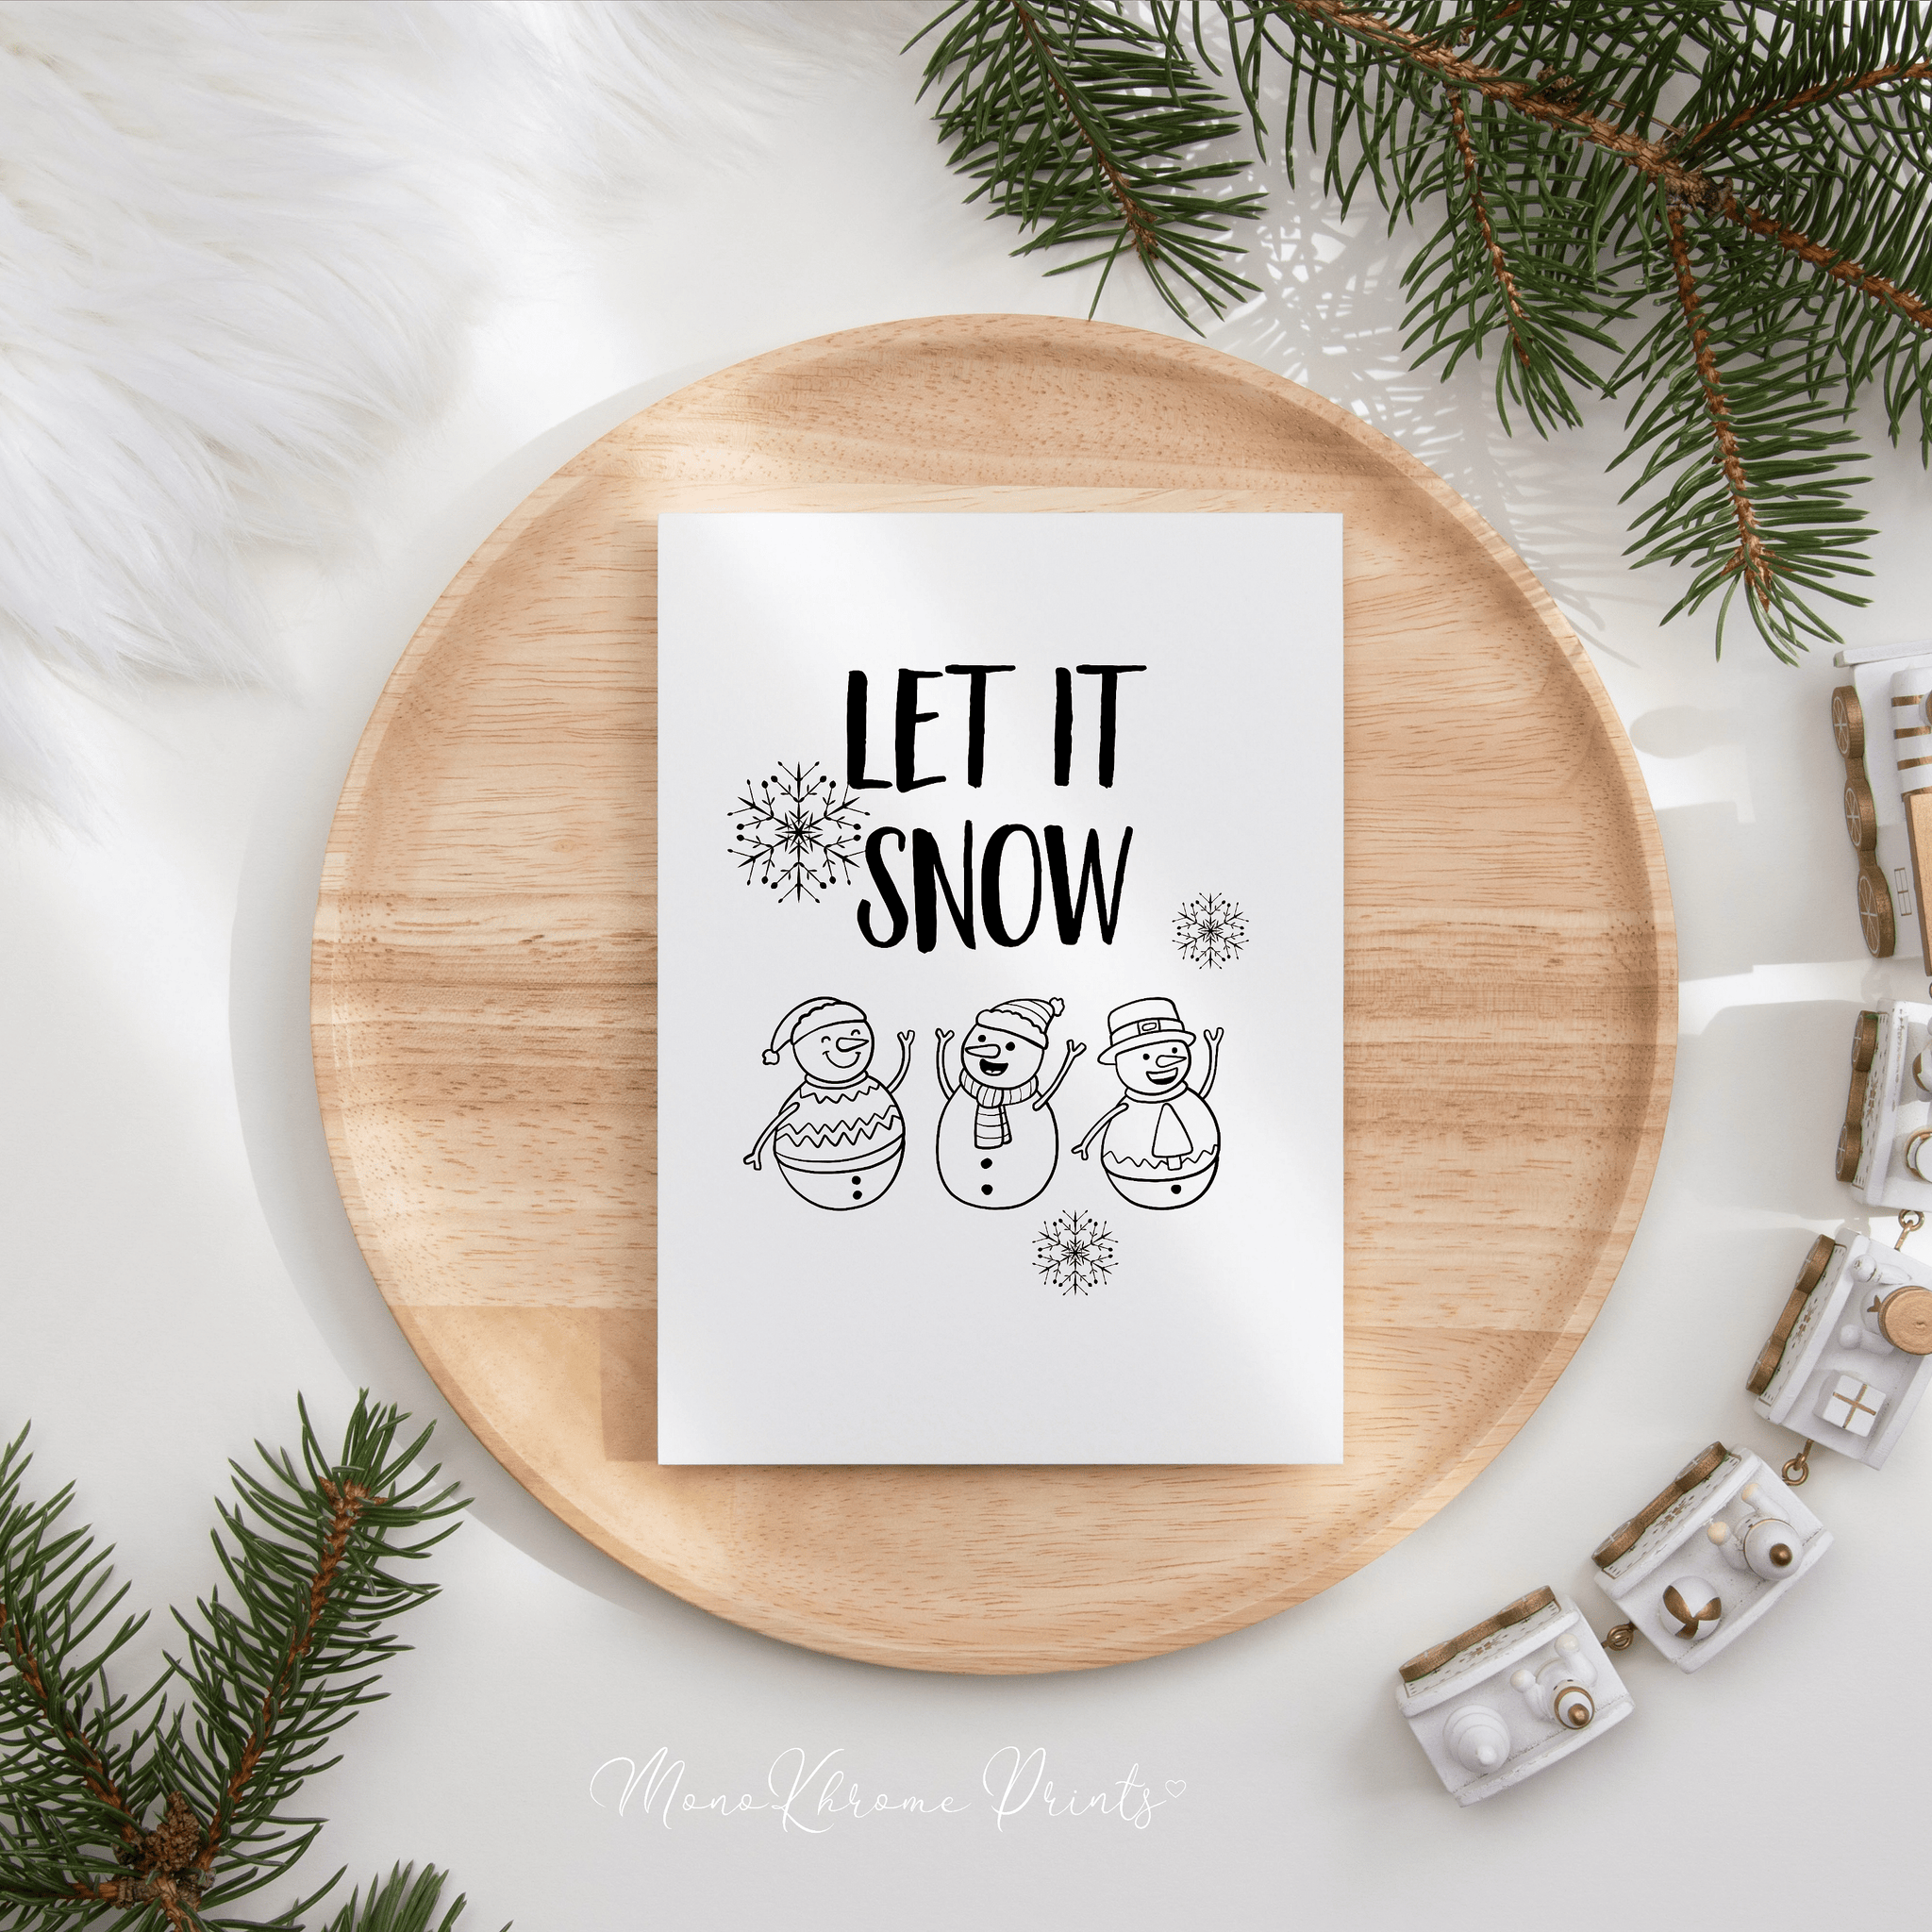 Let it snow - Affiche décorative